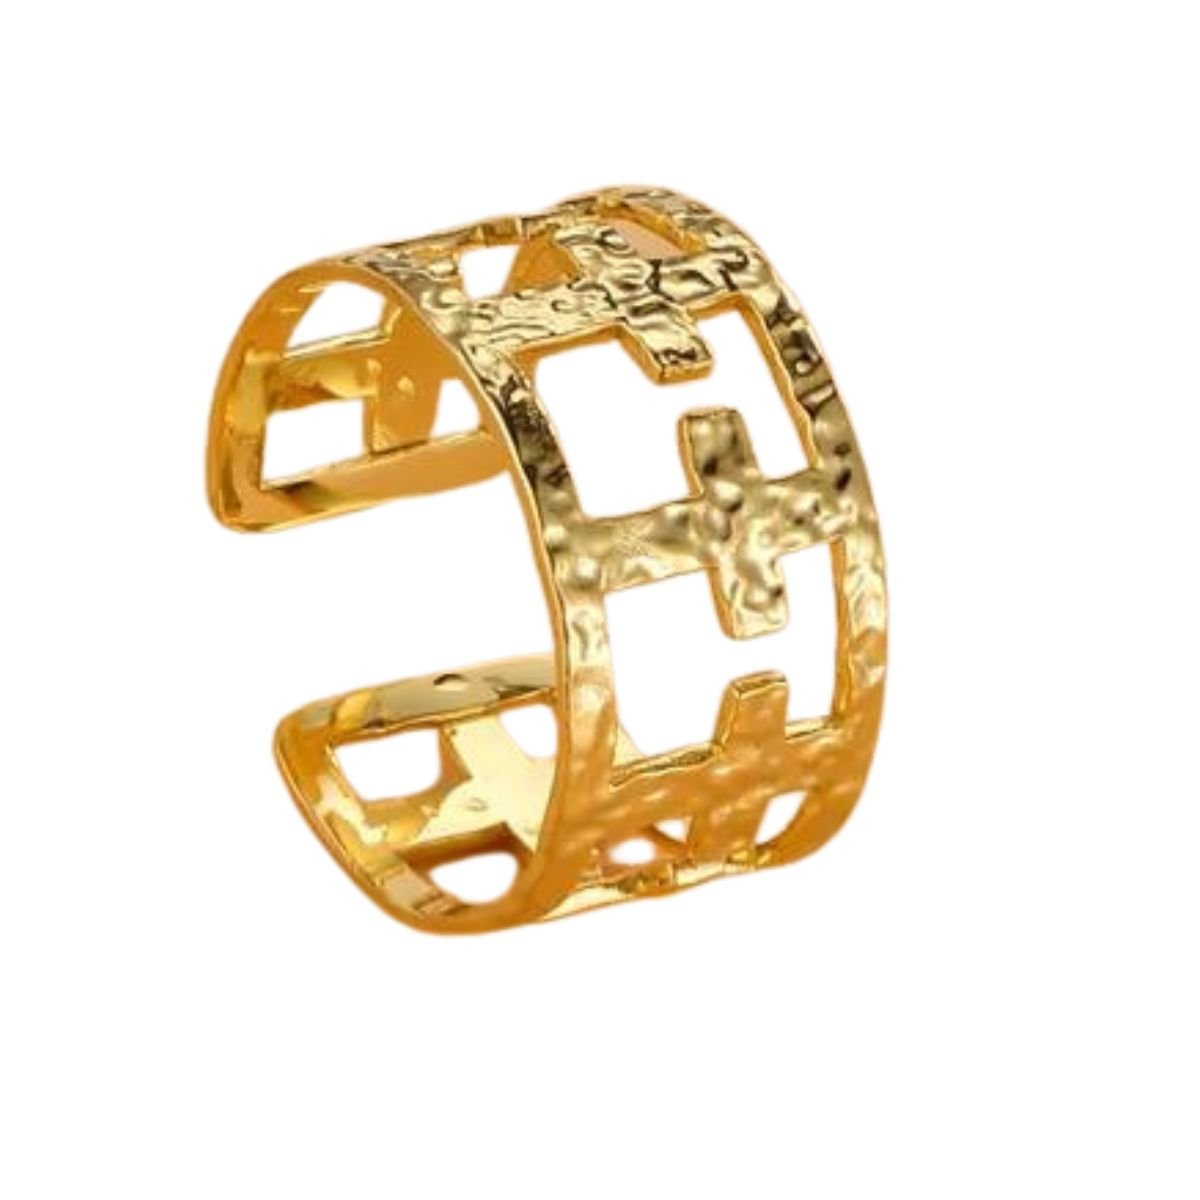 Δαχτυλίδι ατσάλινο με σταυρουδάκια επιχρυσωμένο 18k (R1330) – ring – charmy.gr